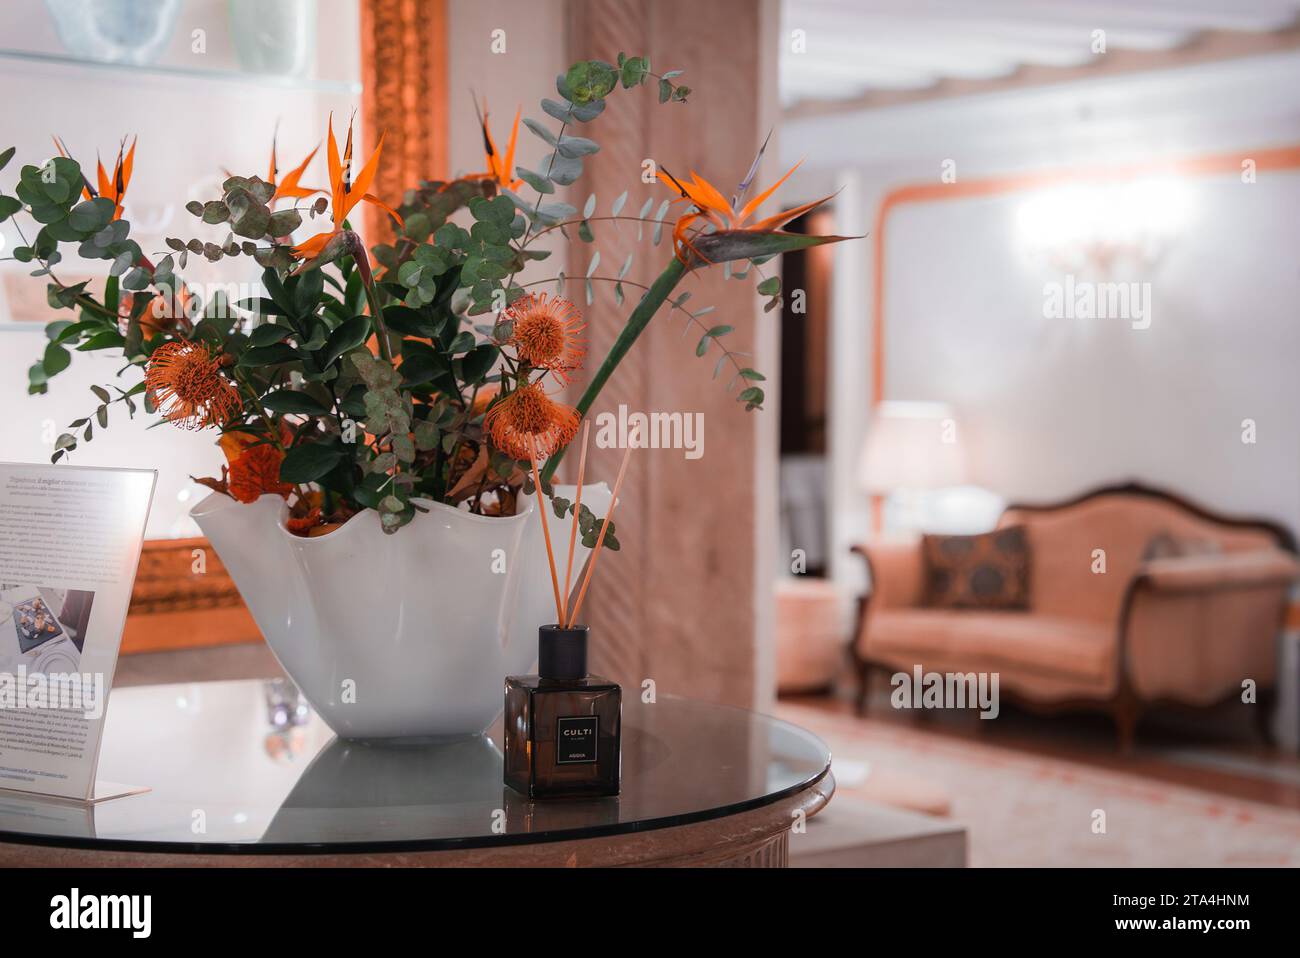 Elegante lobby dell'hotel Venice con allestimento floreale in vaso di vetro e schema colore neutro Foto Stock